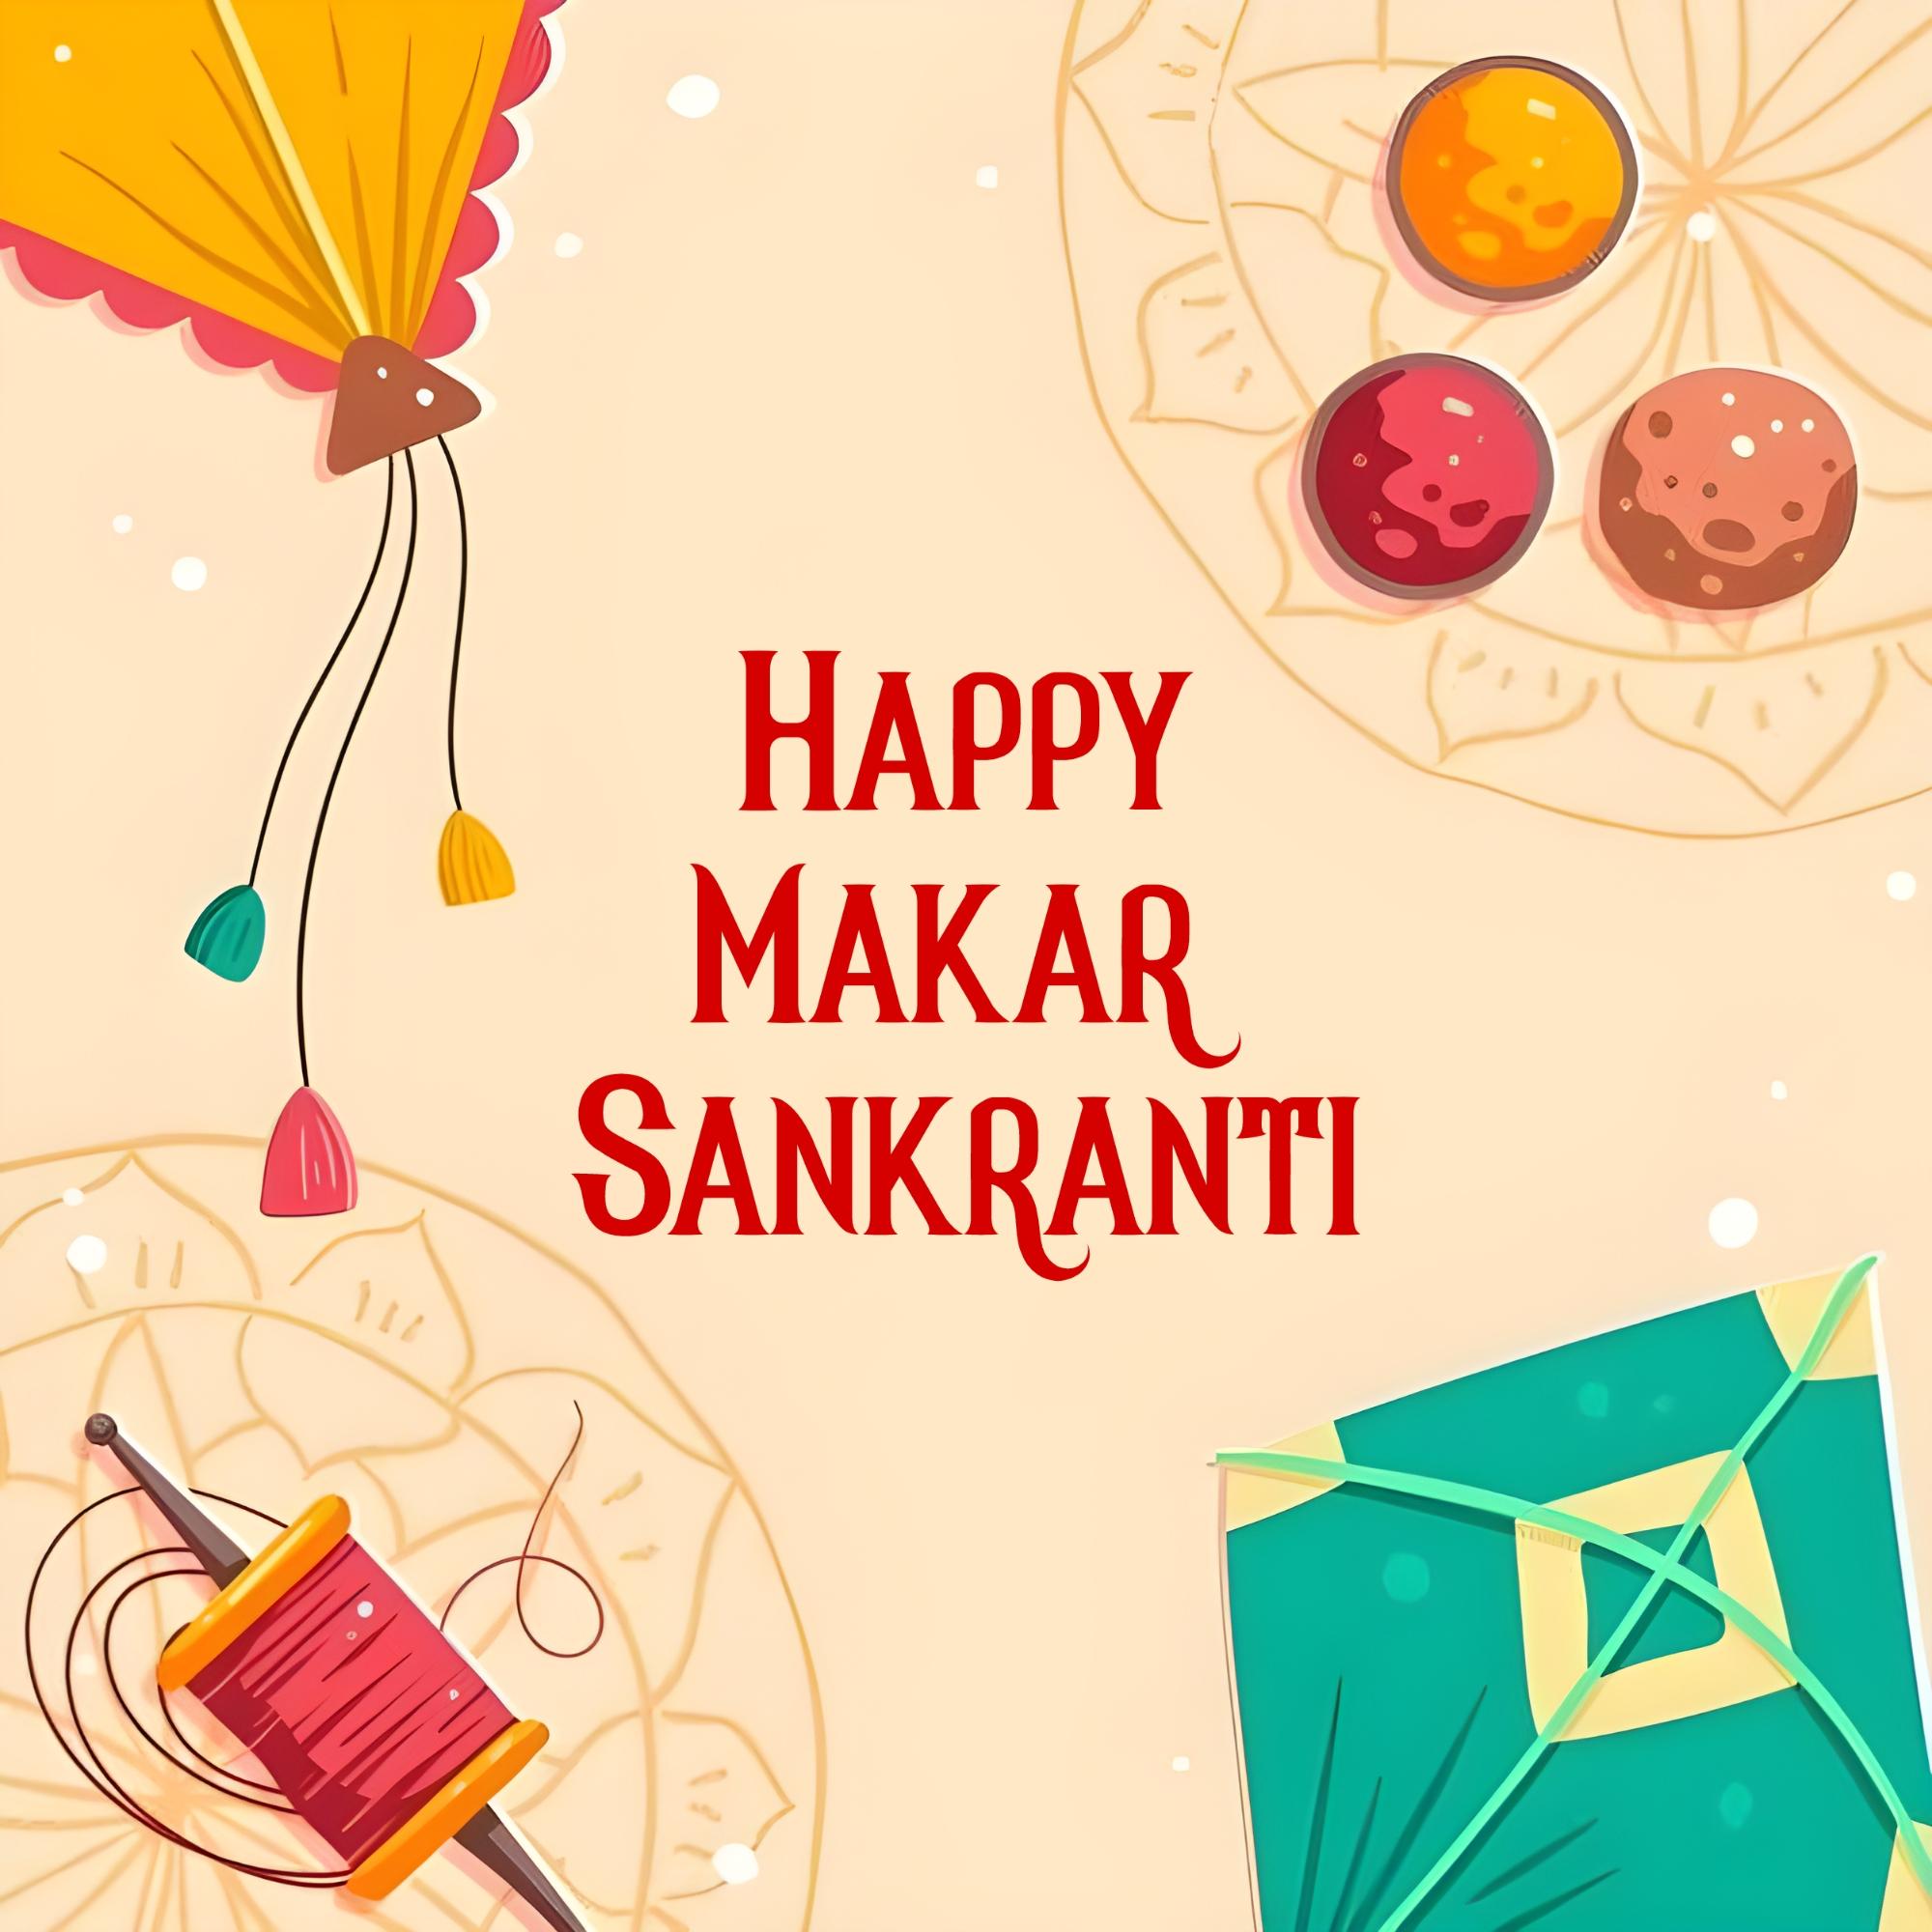 Happy Makar Sankranti Wishes Images